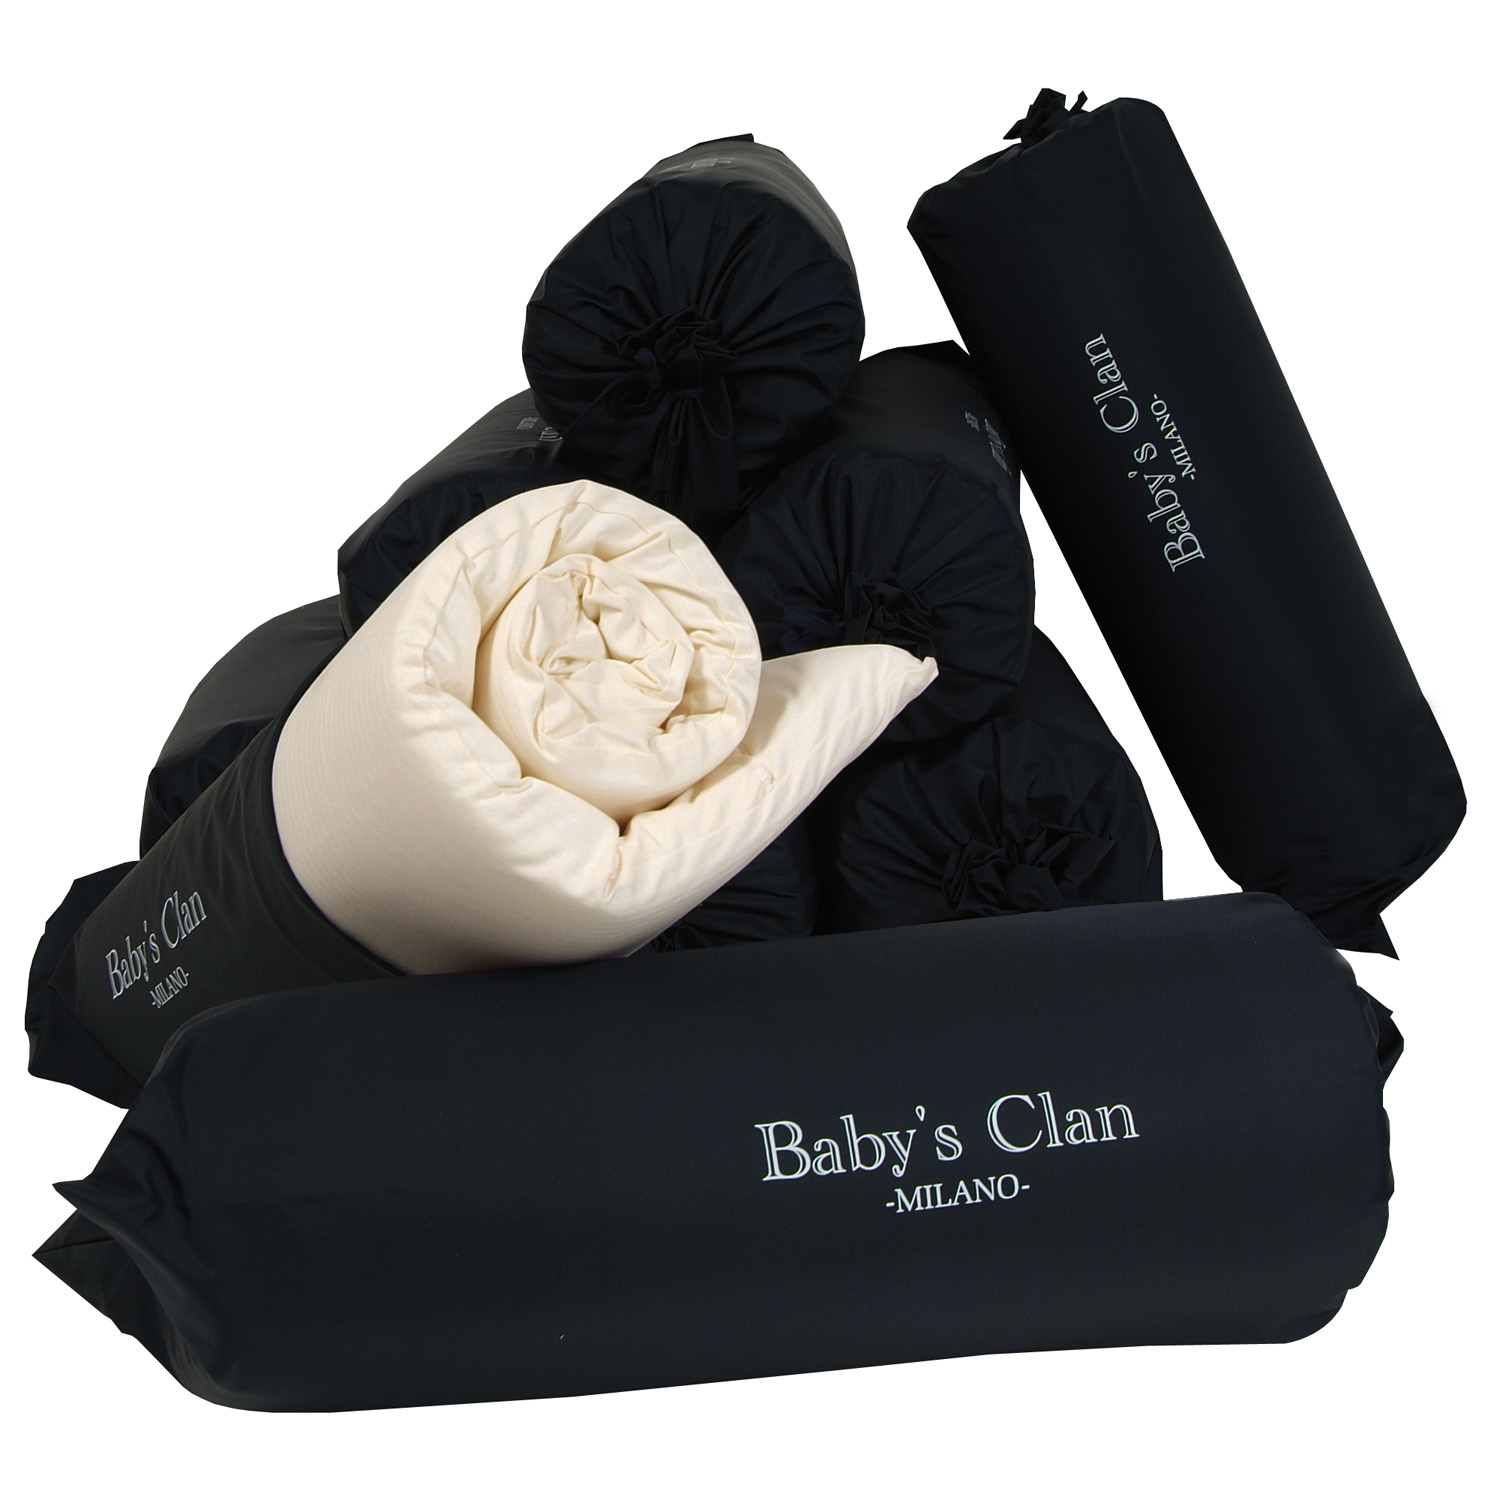 Materassino da campeggio avvolgibile – Baby's Clan • Real Baby Distribuzione